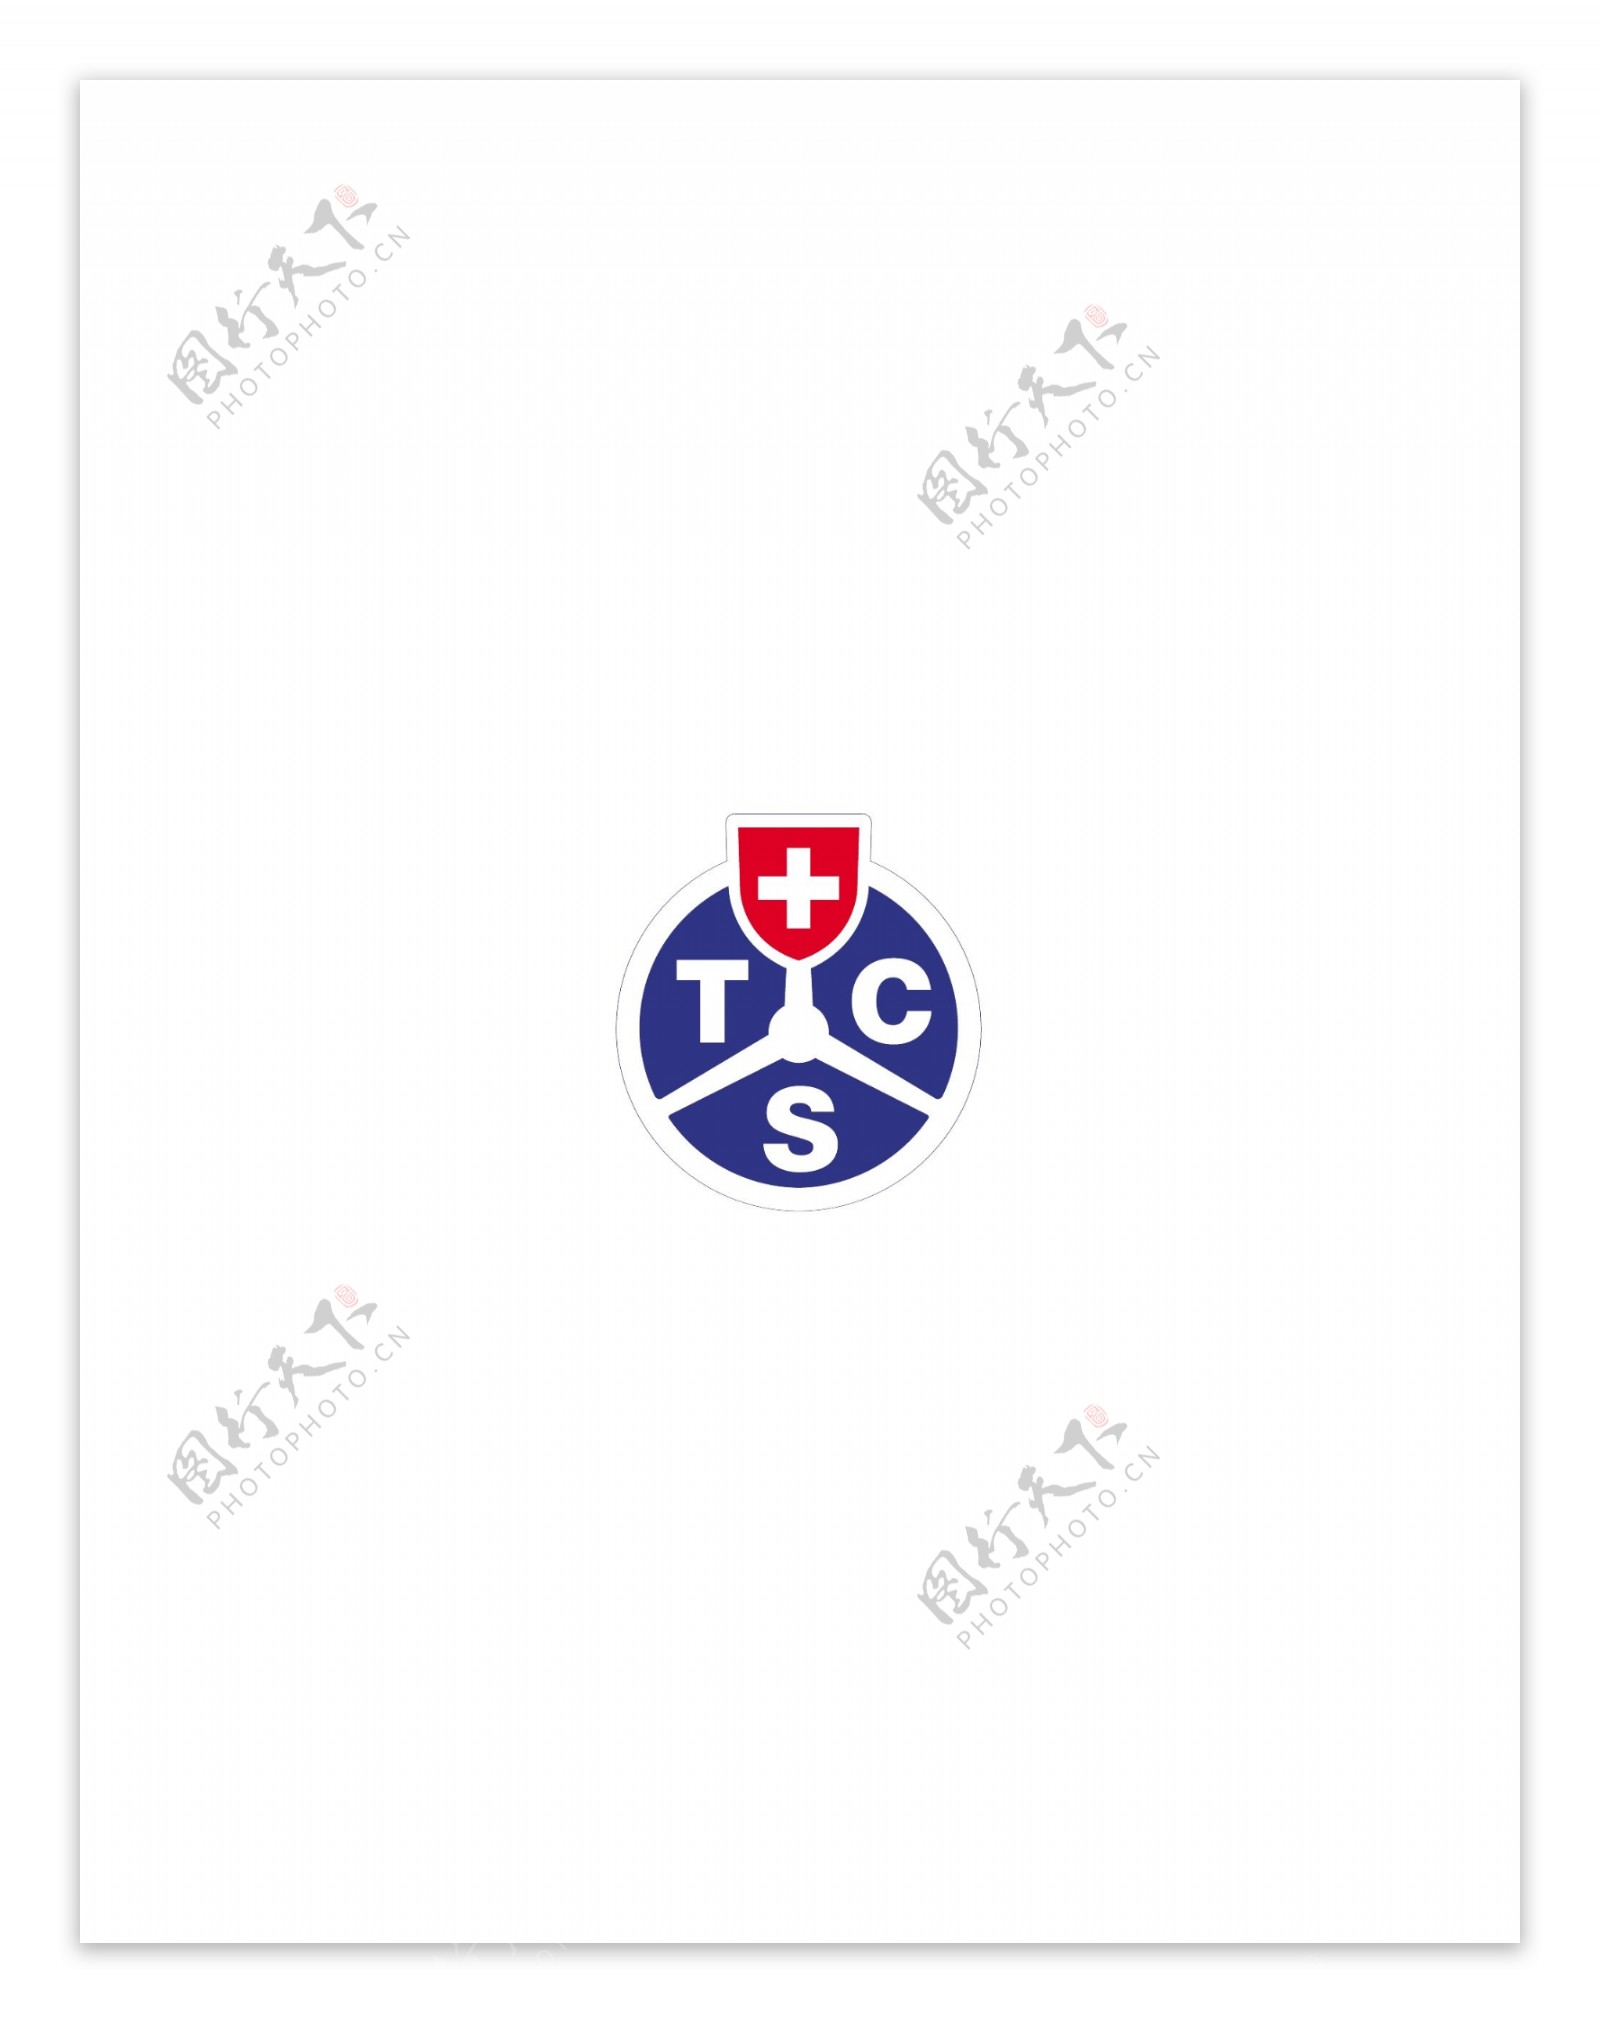 TCSlogo设计欣赏TCS矢量名车logo下载标志设计欣赏